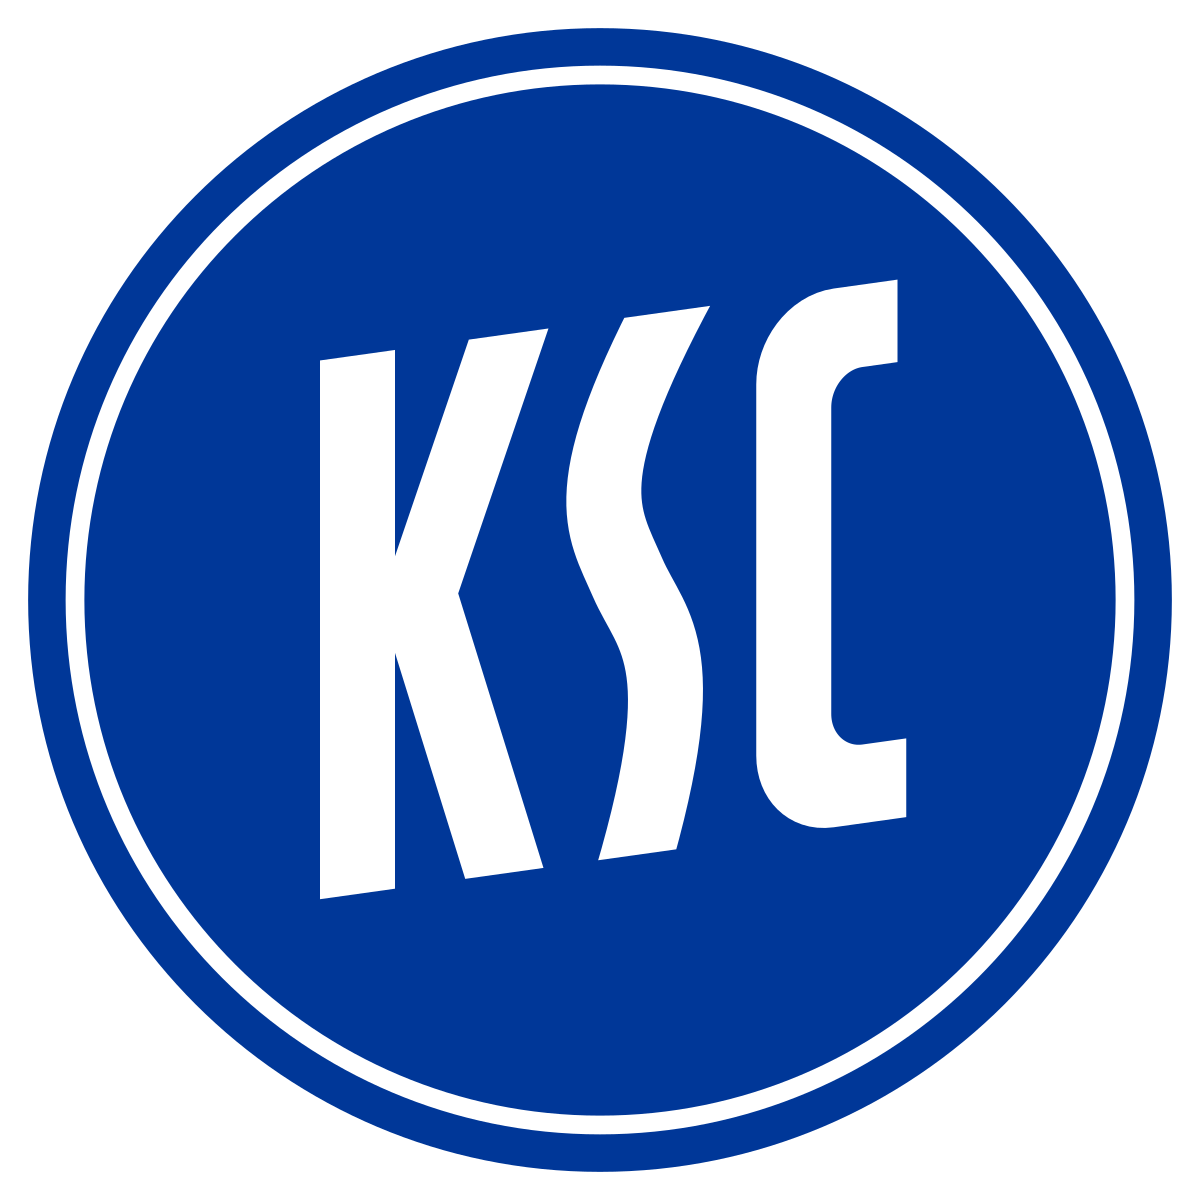 CLB KSC